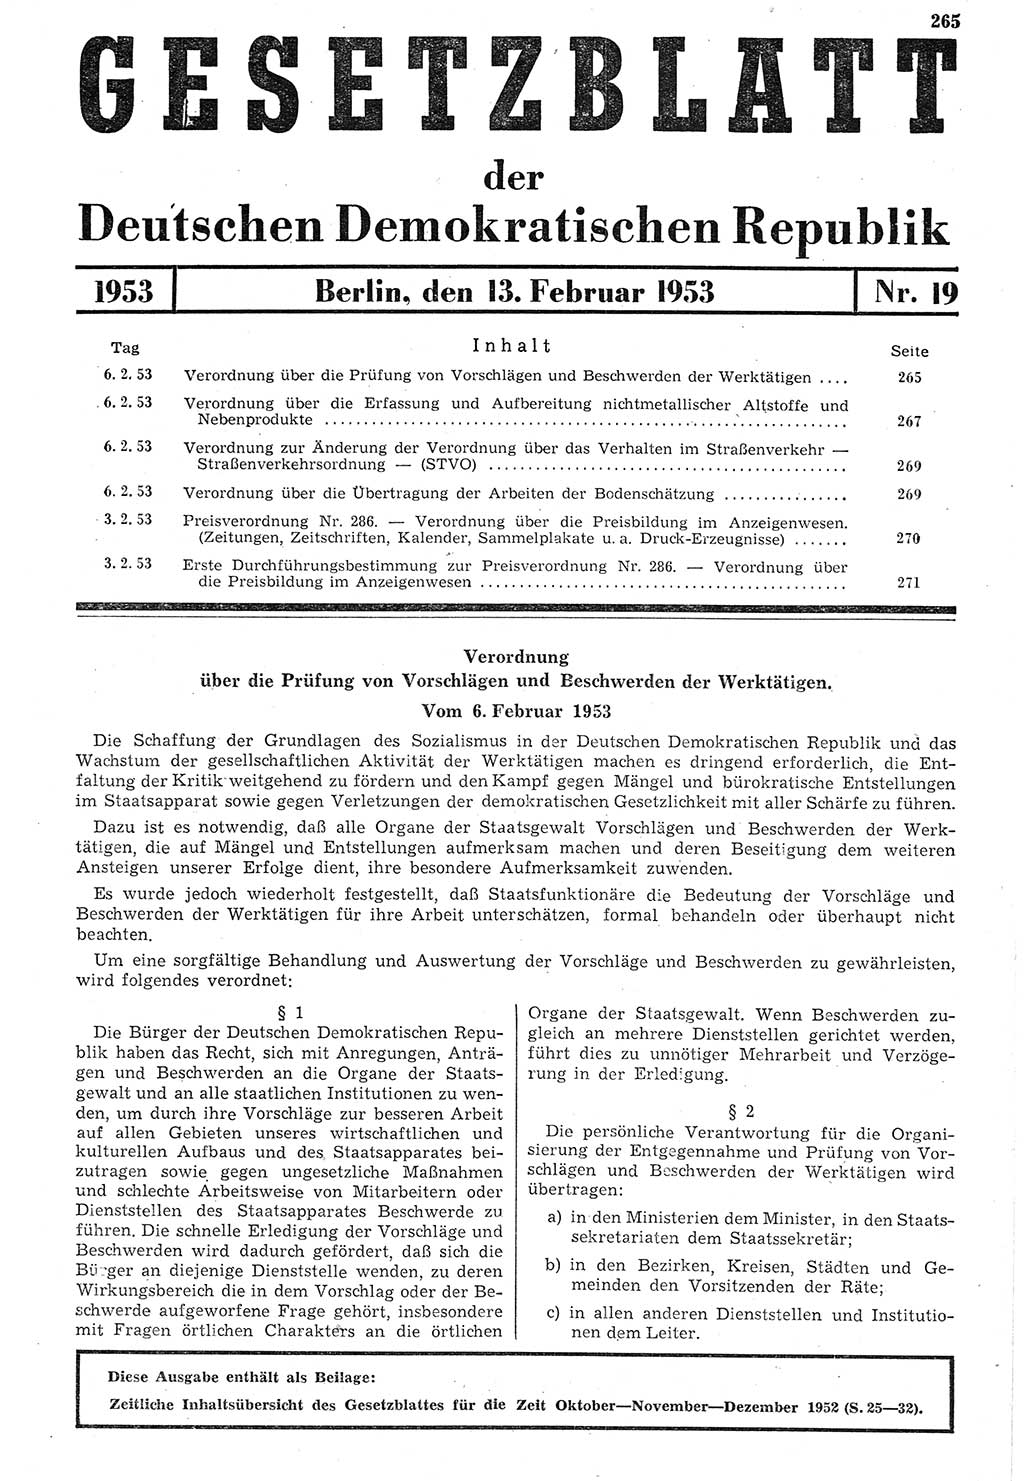 Gesetzblatt (GBl.) der Deutschen Demokratischen Republik (DDR) 1953, Seite 265 (GBl. DDR 1953, S. 265)